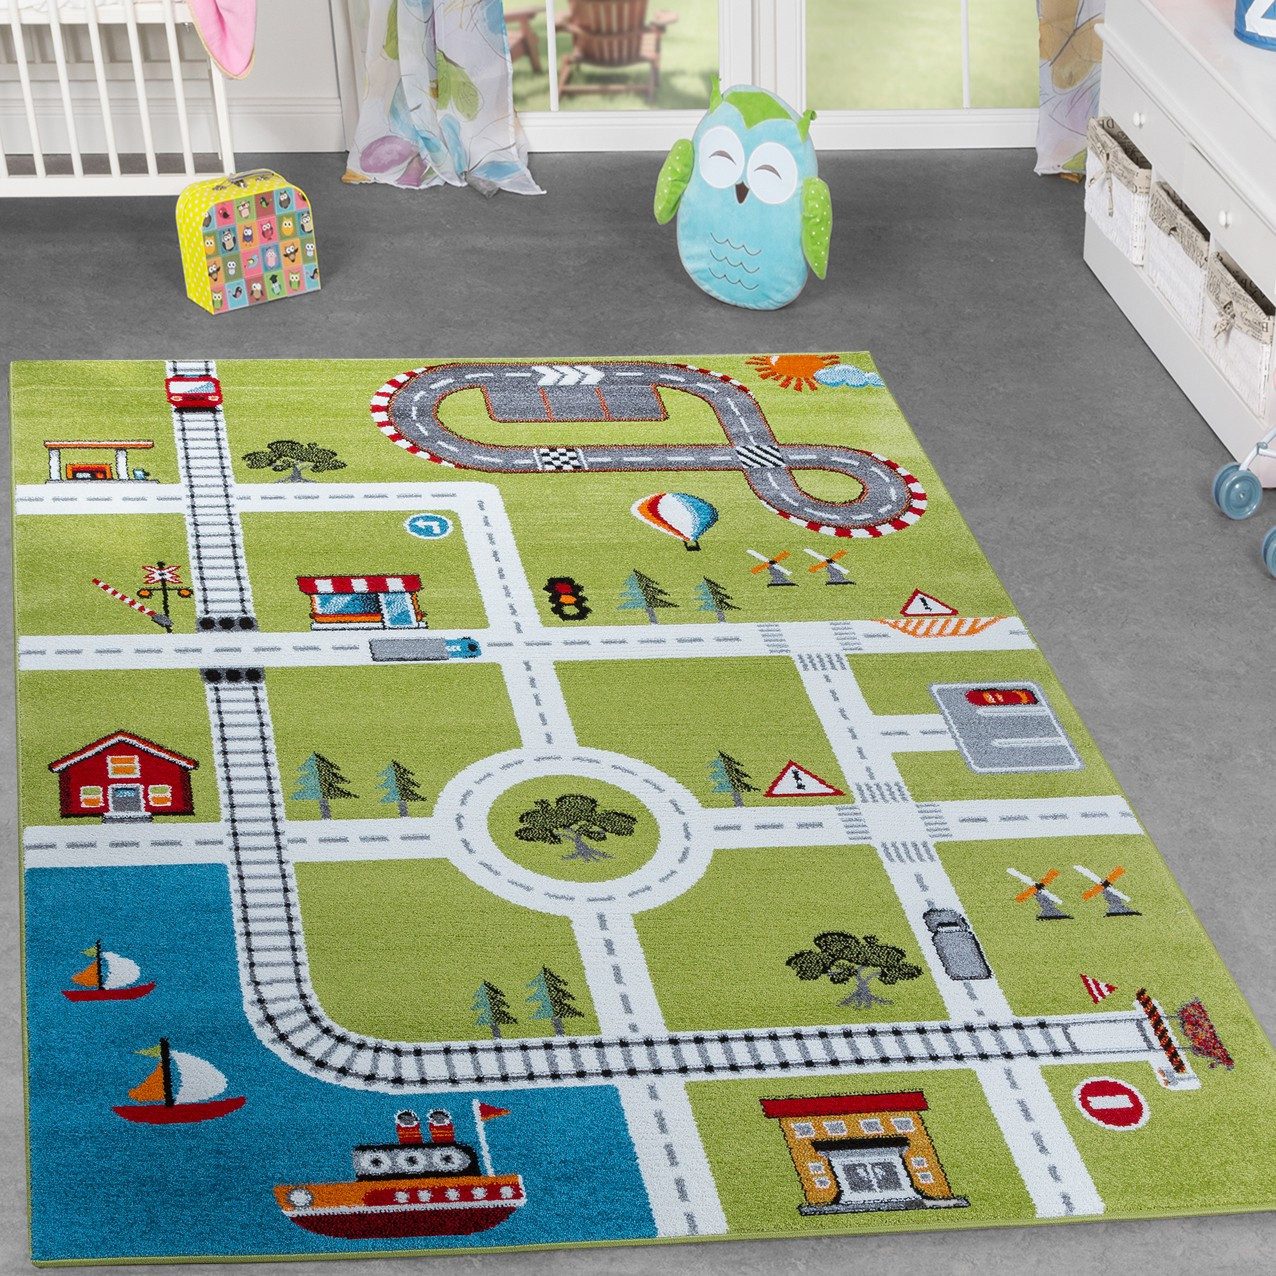 Kinderzimmer Teppich
 Kinderzimmer Teppich Mit Design City Hafen Stadt